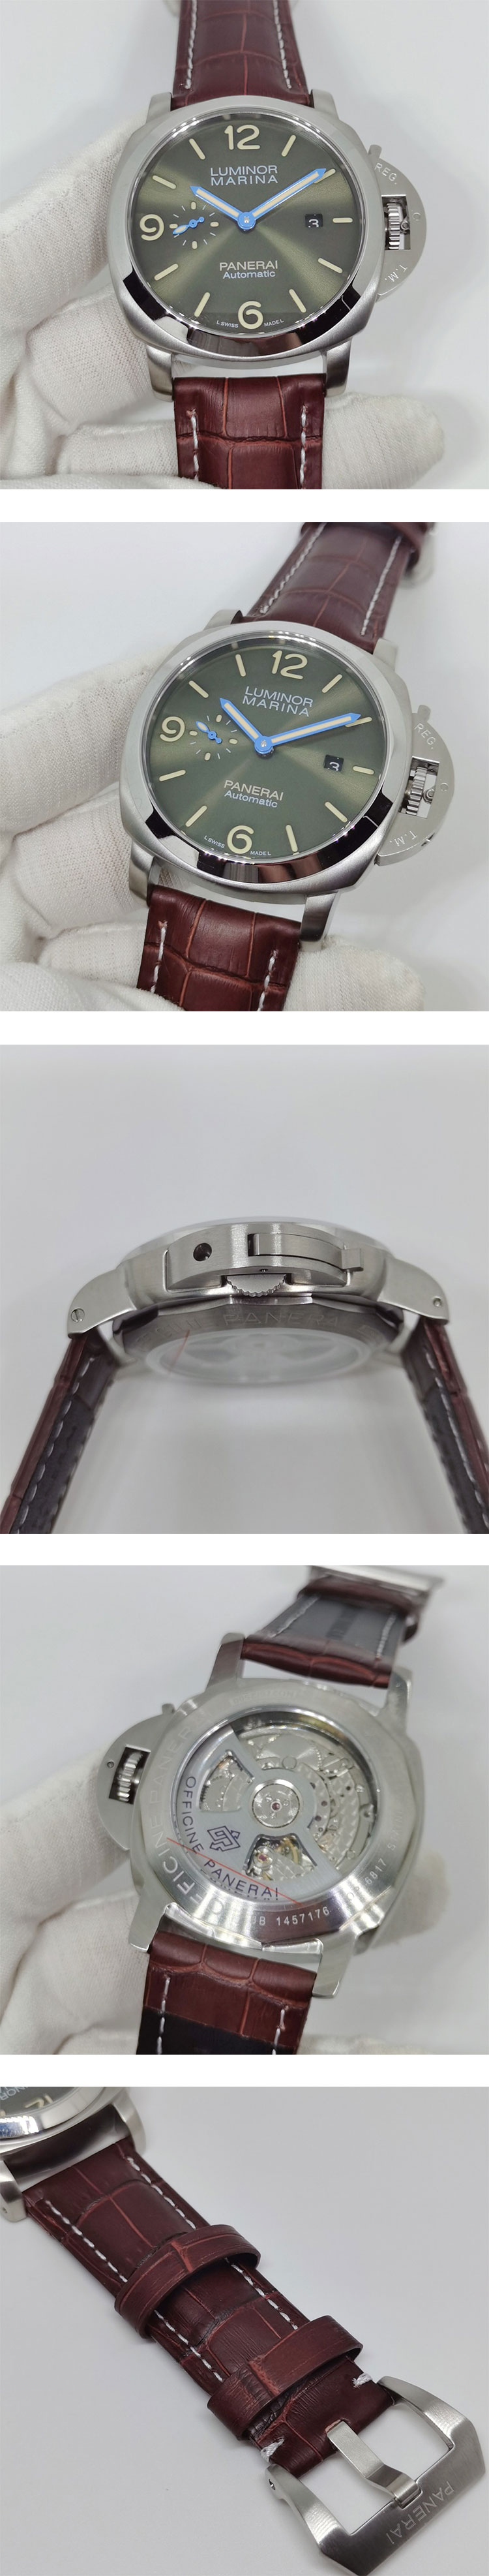 激安腕時計挑戦 パネライコピーPAM01116 ルミノール マリーナ プラチナテック™ - 44mm グリーン